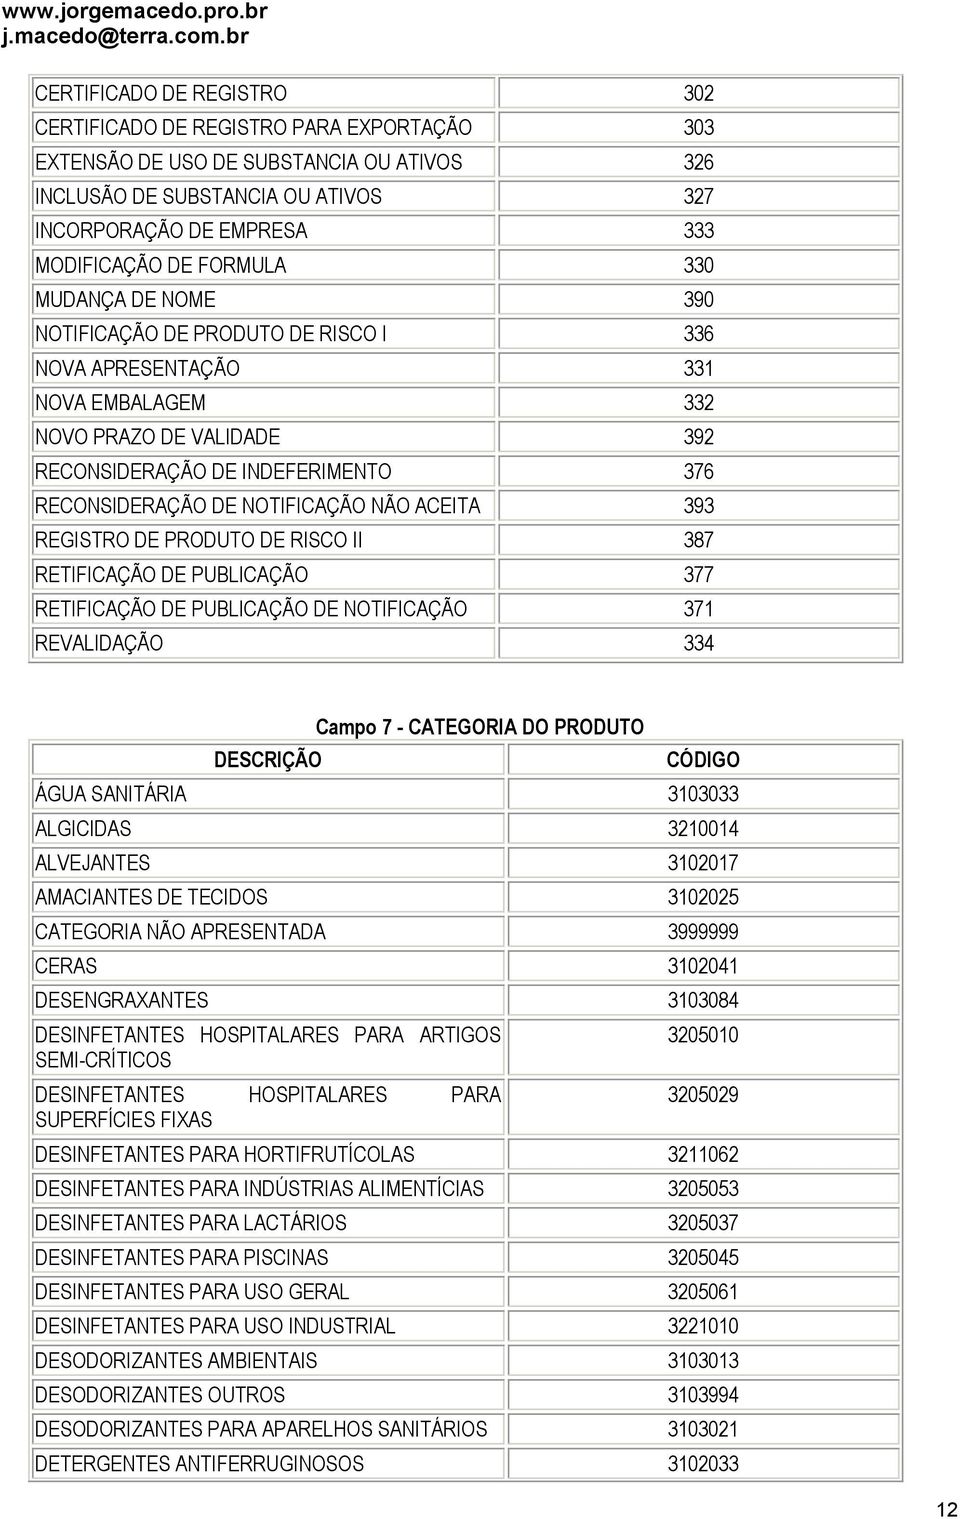 NOTIFICAÇÃO NÃO ACEITA 393 REGISTRO DE PRODUTO DE RISCO II 387 RETIFICAÇÃO DE PUBLICAÇÃO 377 RETIFICAÇÃO DE PUBLICAÇÃO DE NOTIFICAÇÃO 371 REVALIDAÇÃO 334 DESCRIÇÃO Campo 7 - CATEGORIA DO PRODUTO